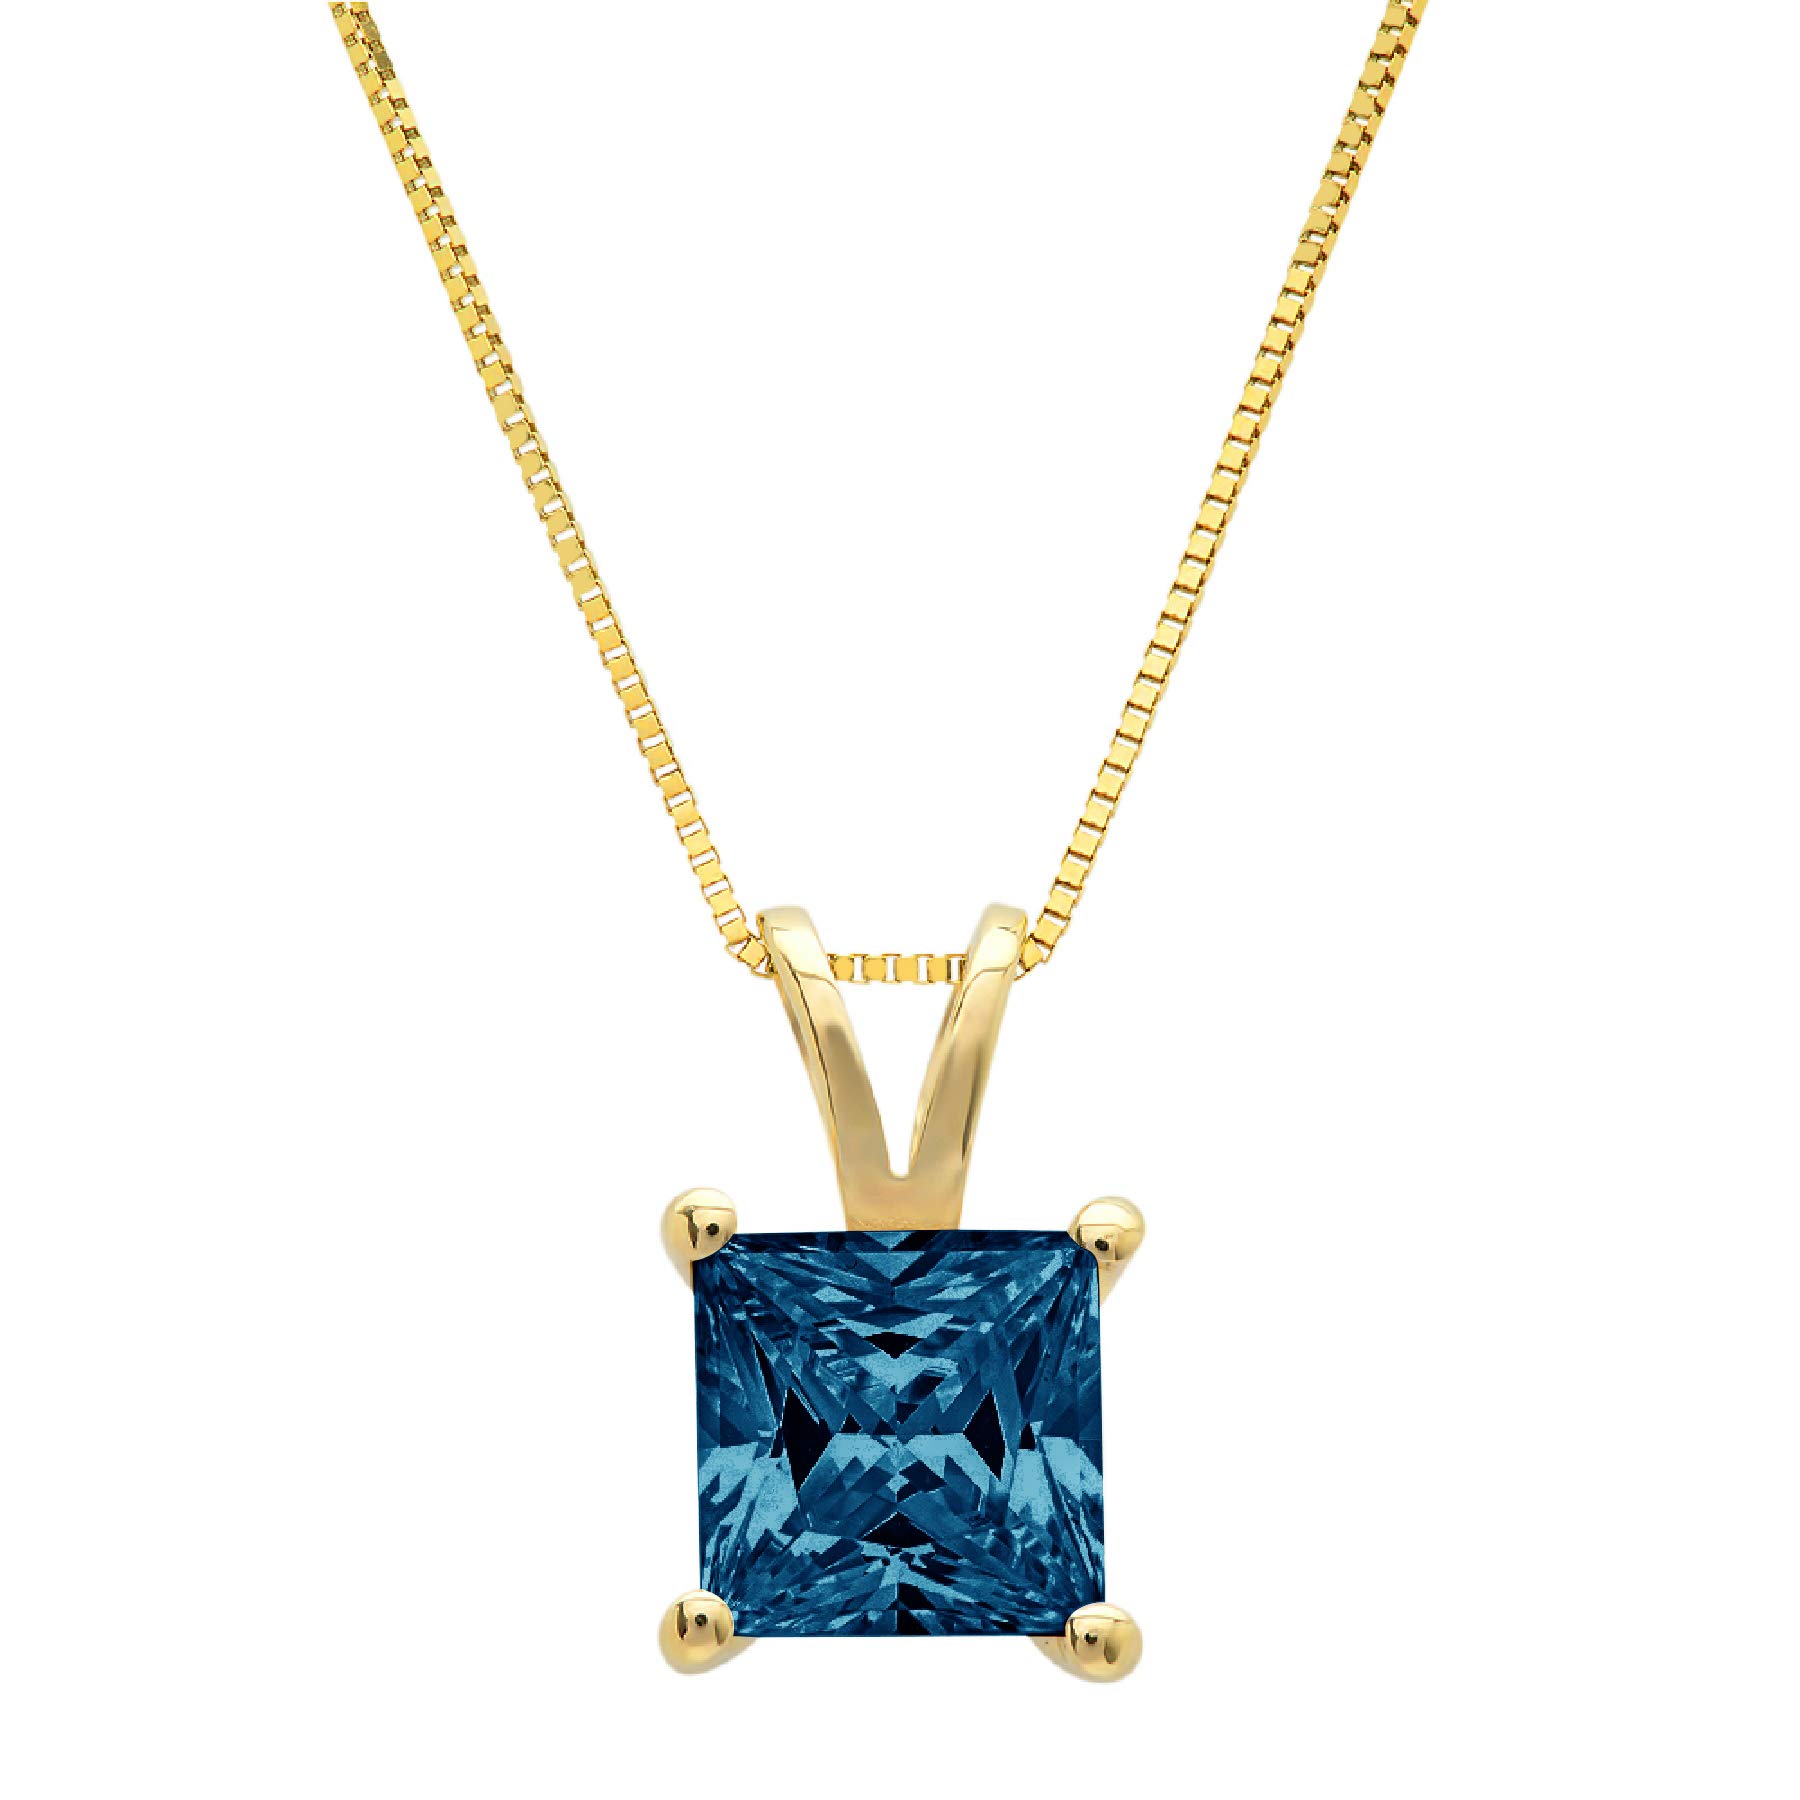 3.05ct Brilliant Princess Cut unique Fine jewelry Natural London Blue Topaz Ideal VVS1 D Solitaire Pendant Necklace With 18